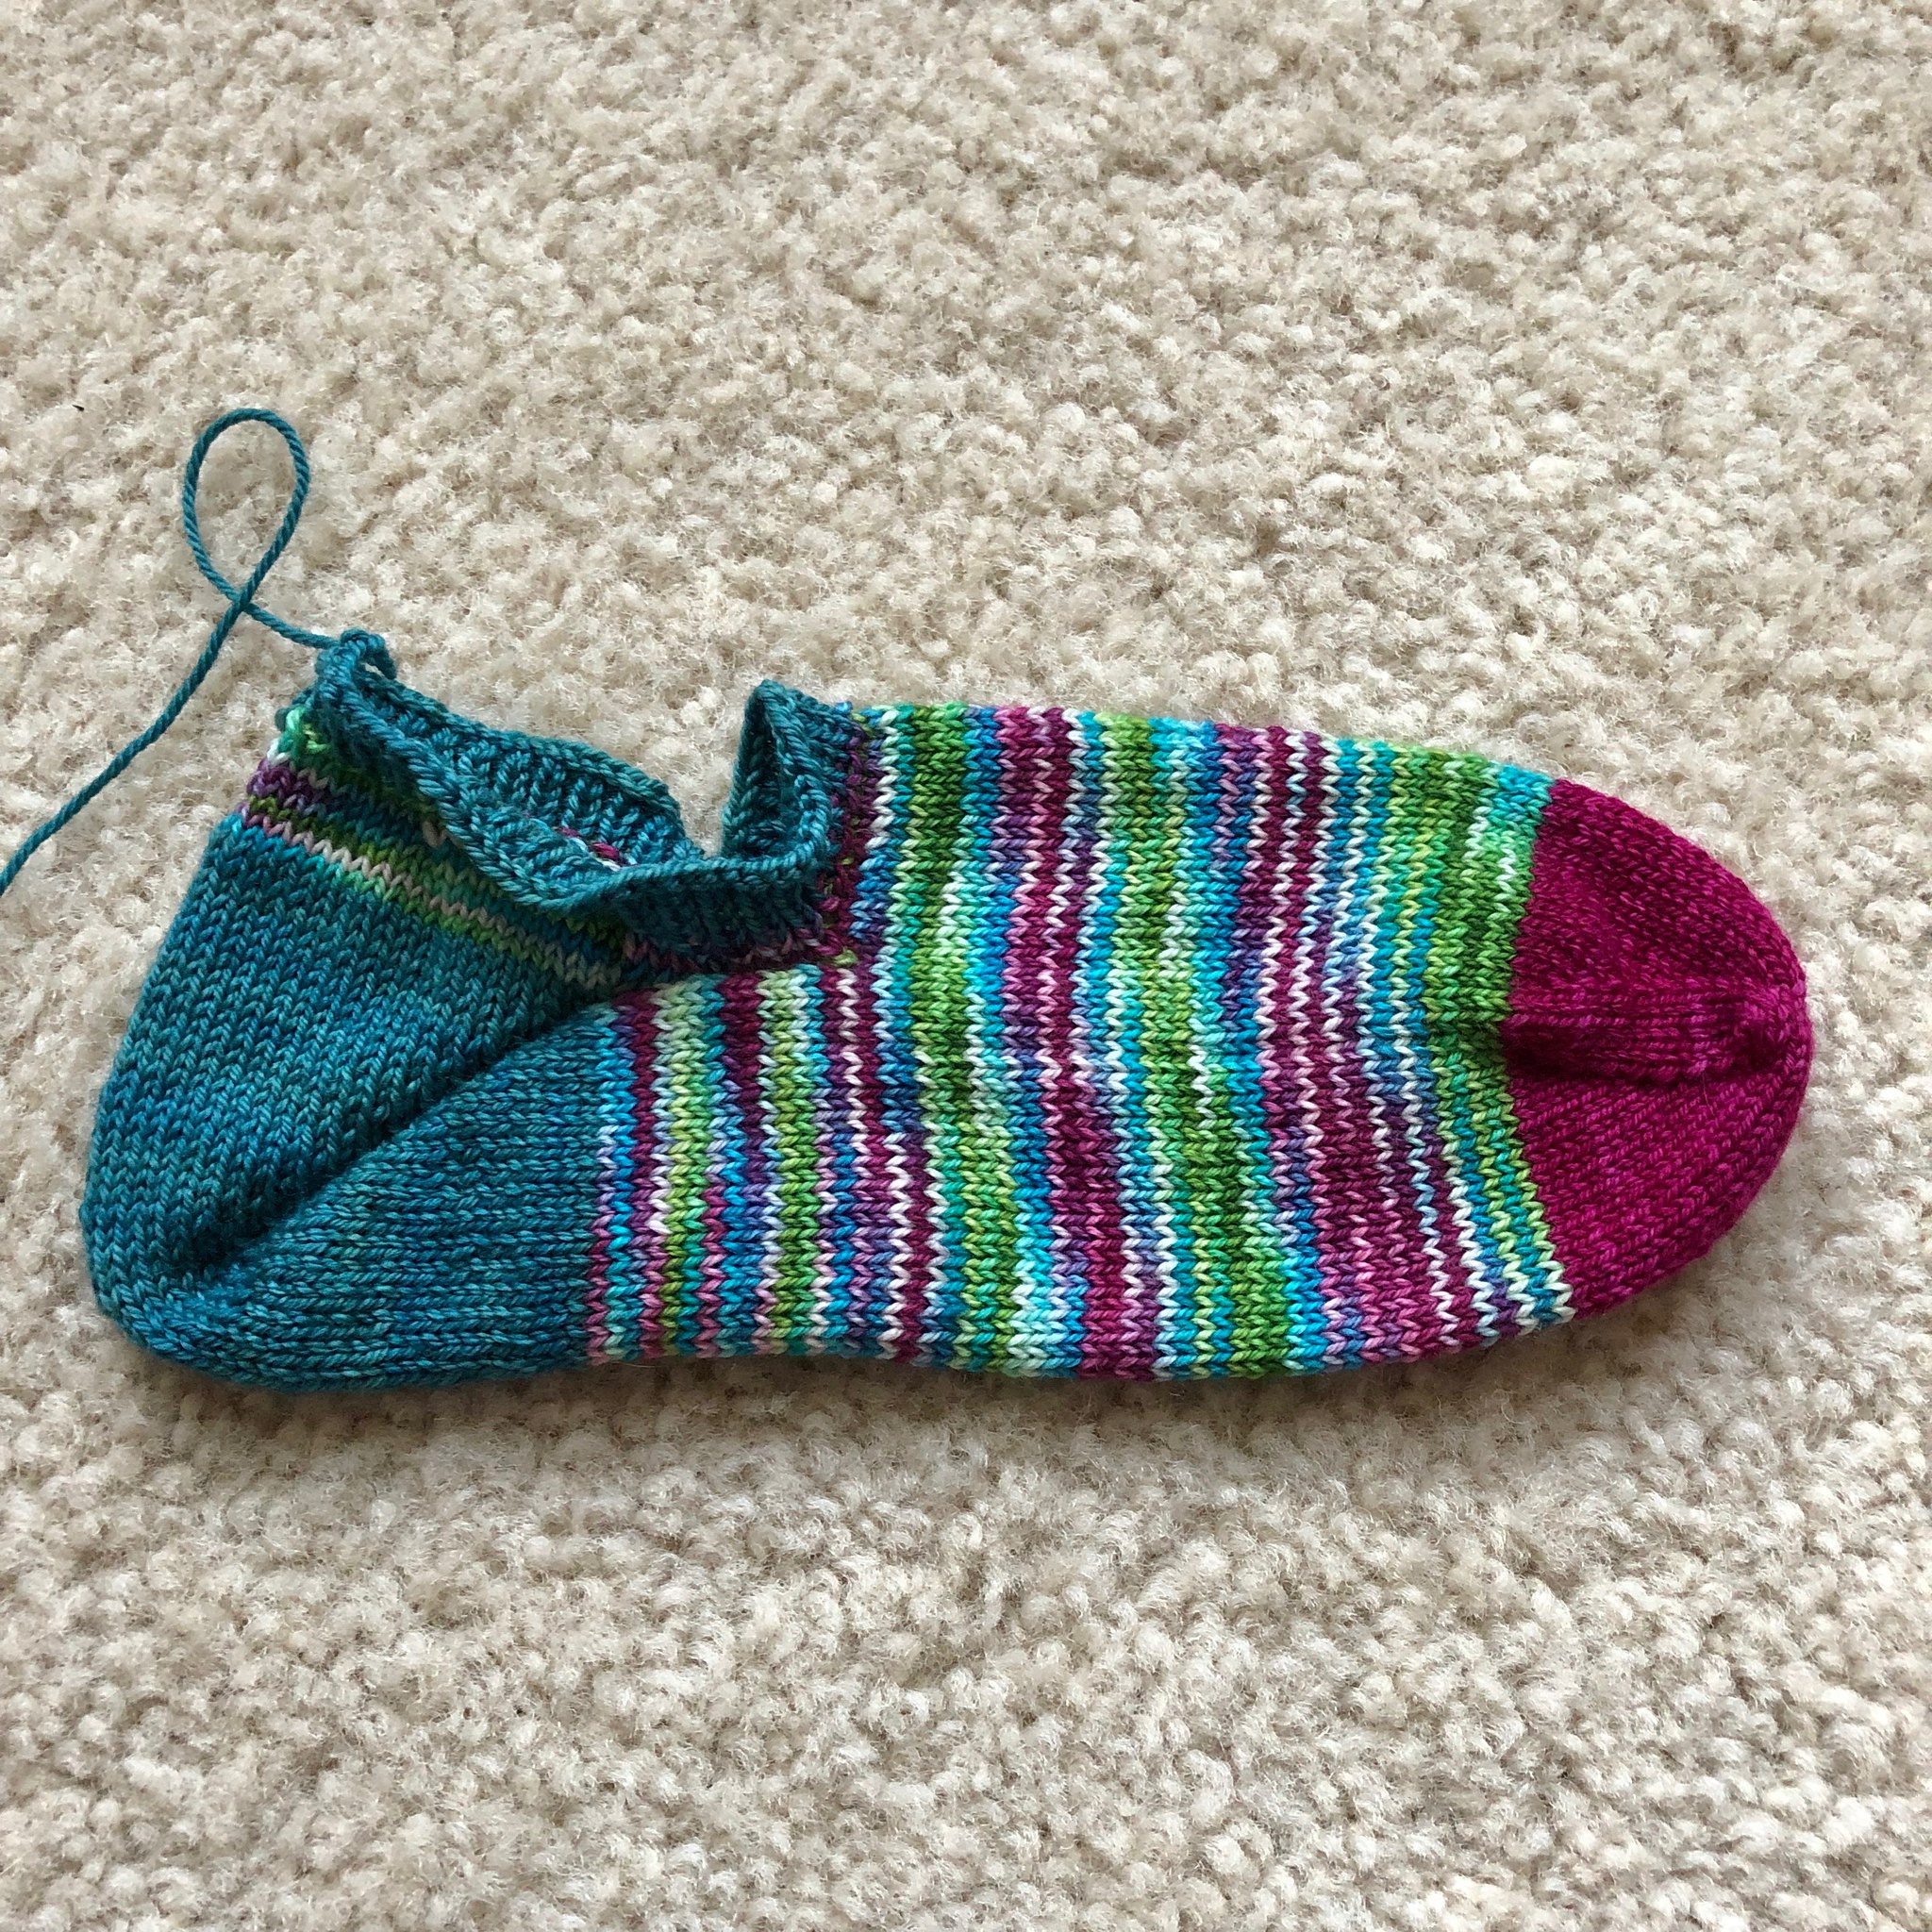 Mermaid footie socks